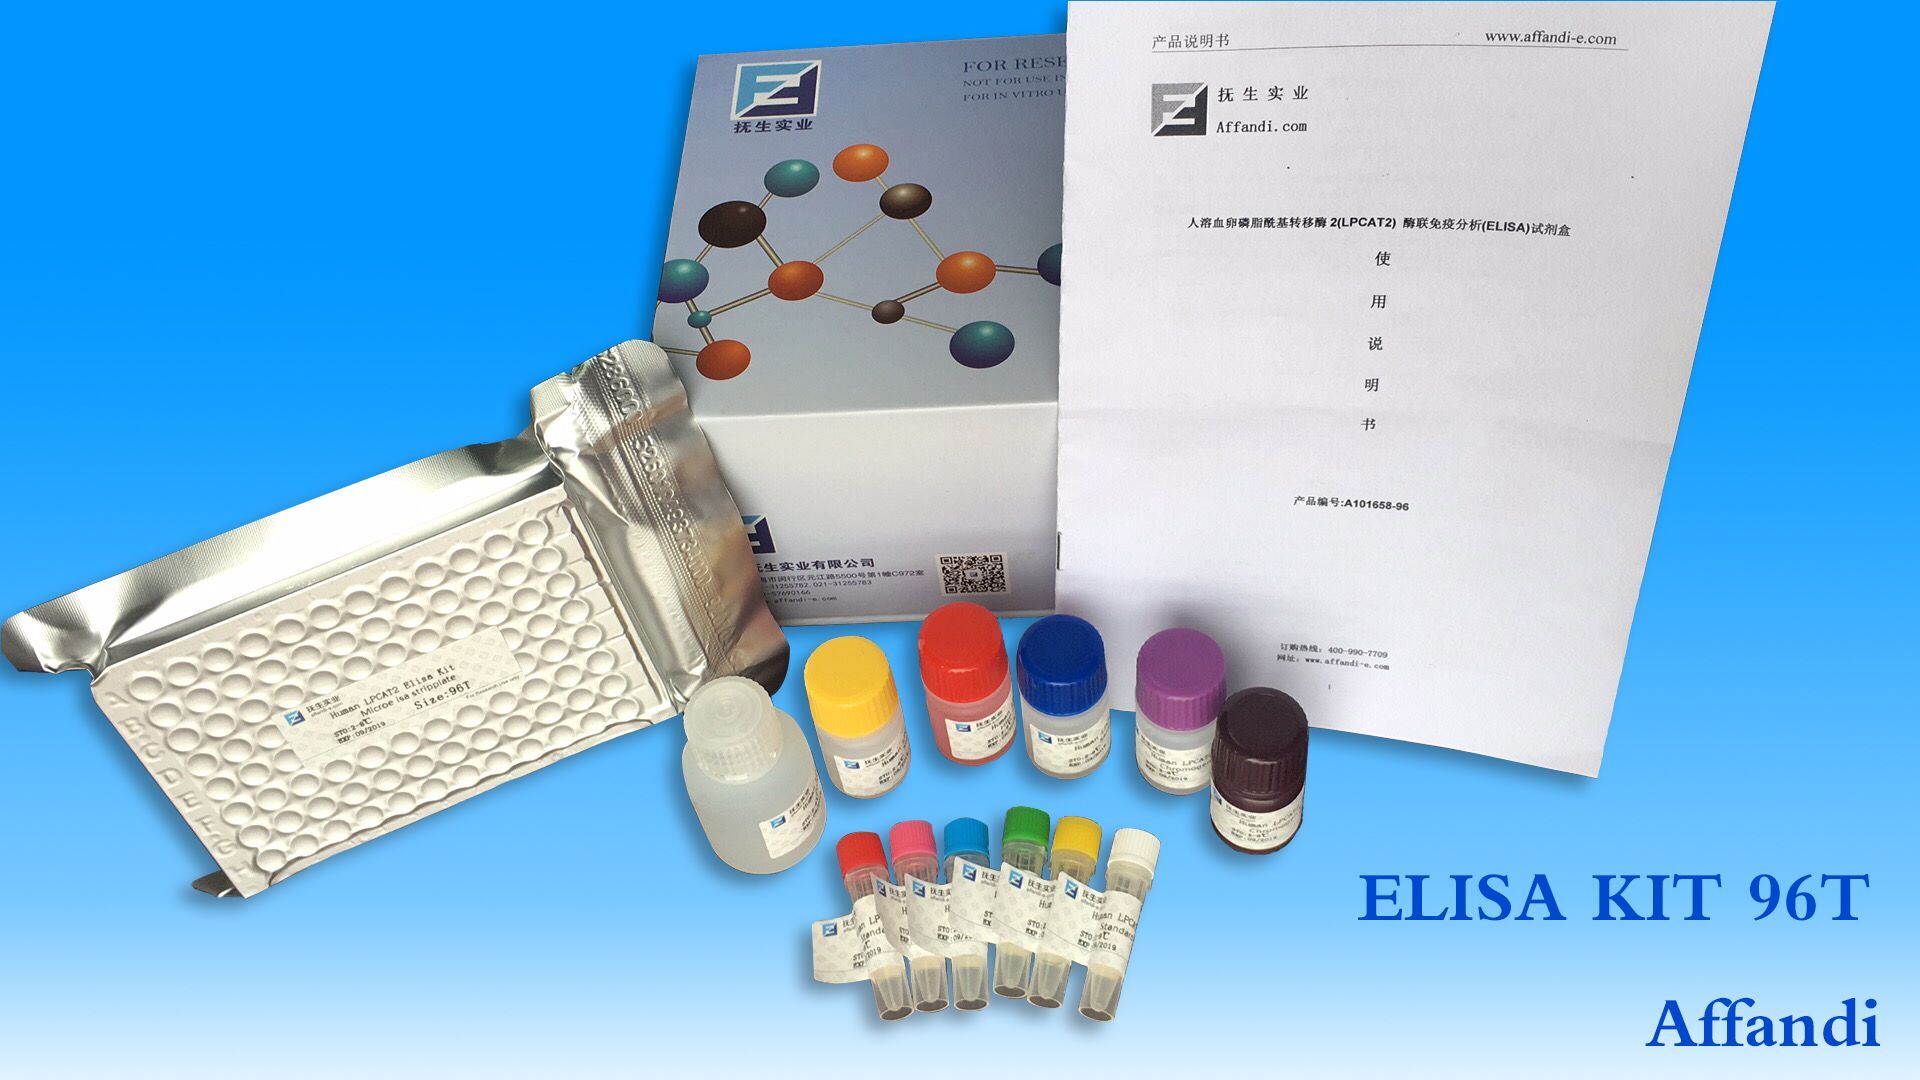 血红蛋白E检测试剂盒   ​​​​​​​